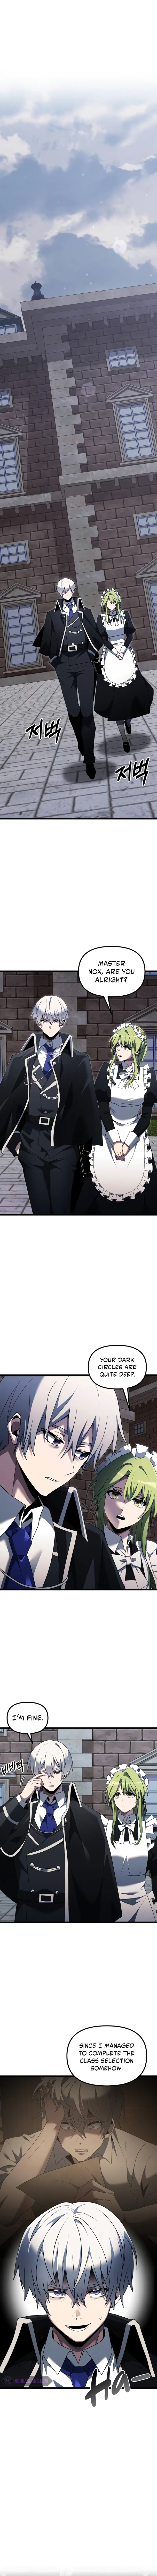 Terminally-Ill Genius Dark Knight Chapter 48 page 2